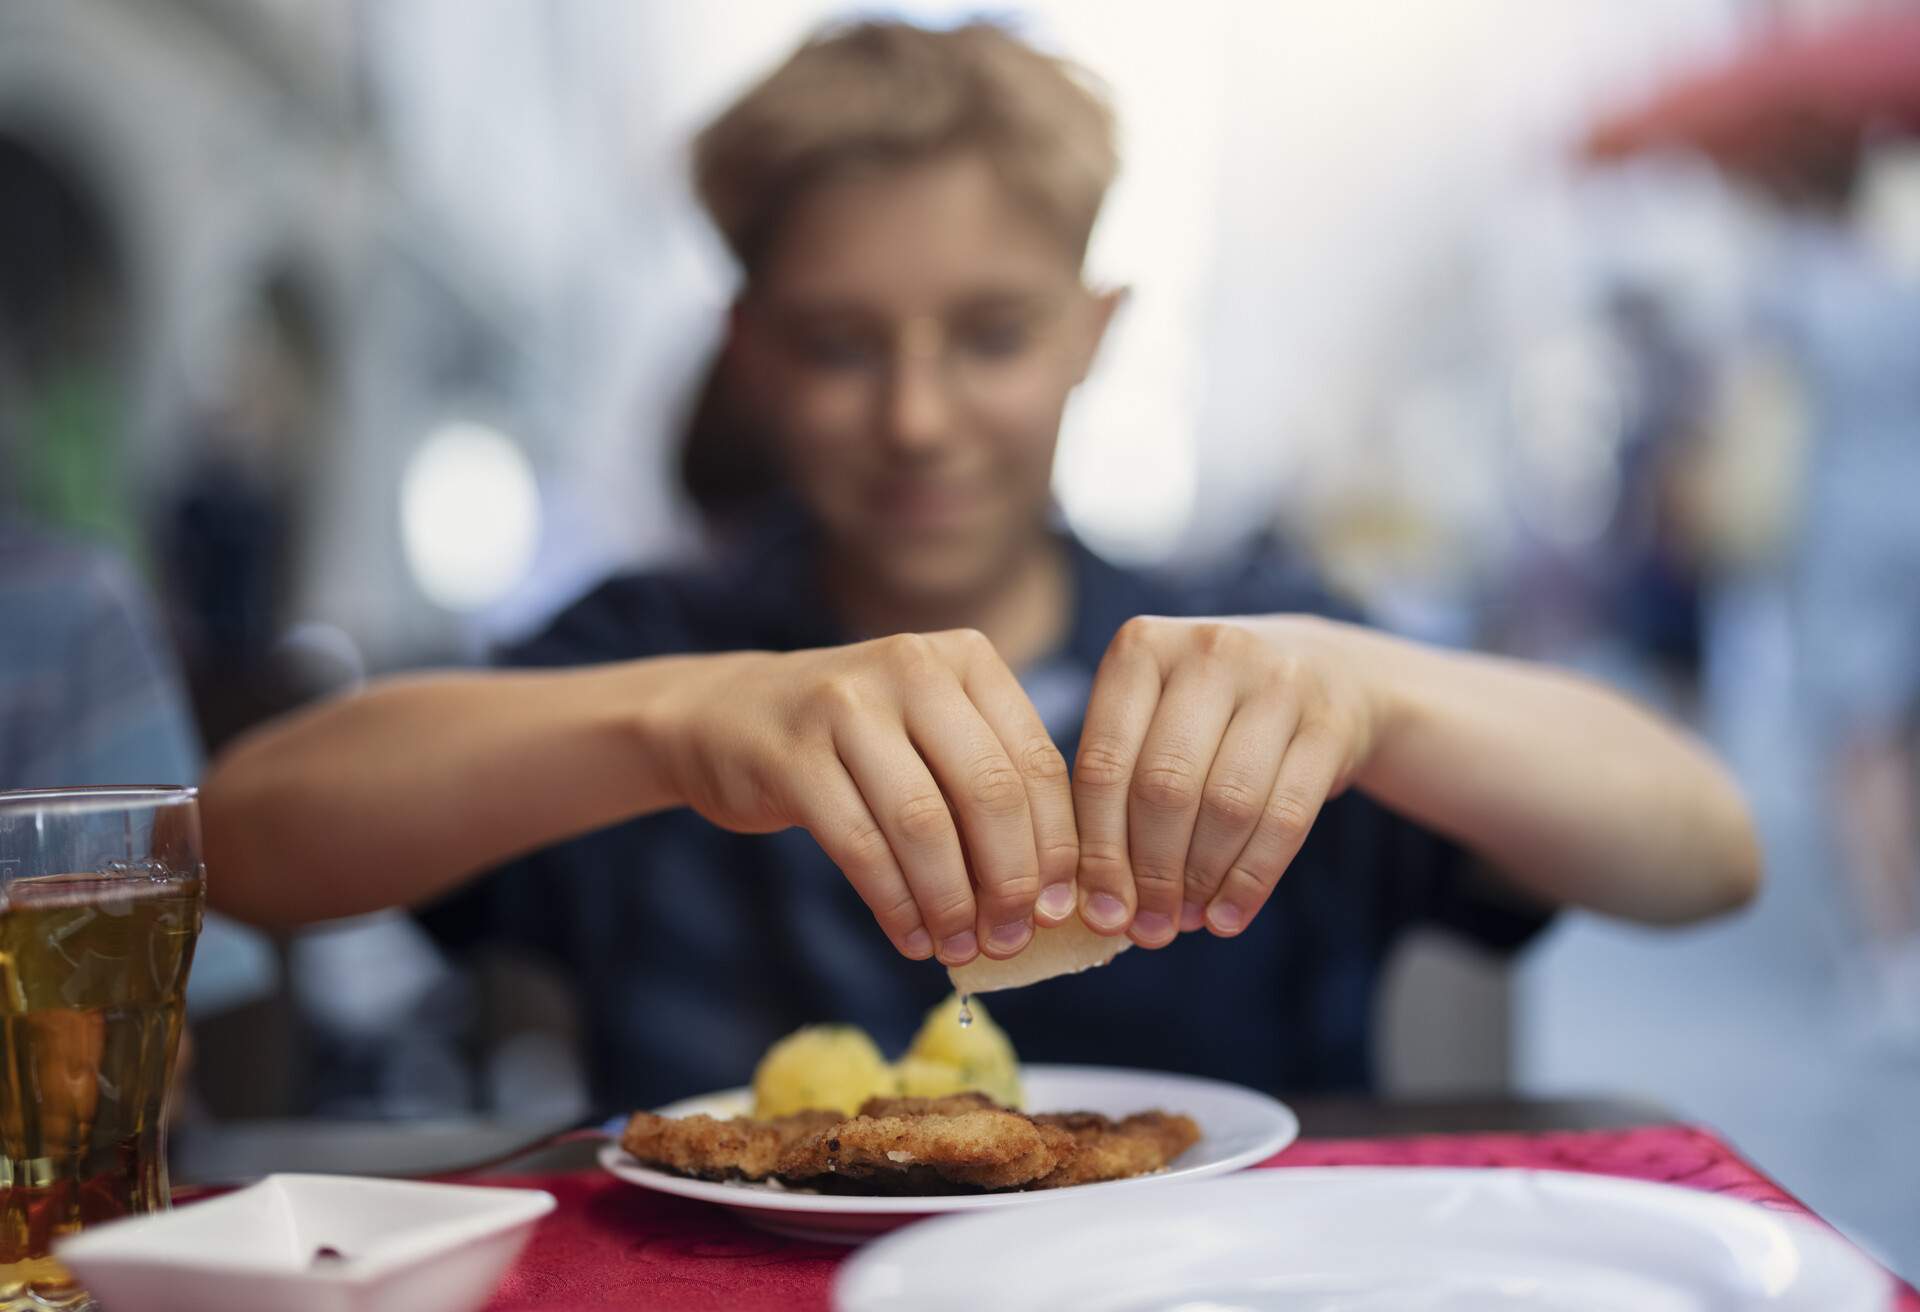 Teenage boy eating wiener schnitzel in a restaurant. The boy is squeezing lemon over the schnitzel.